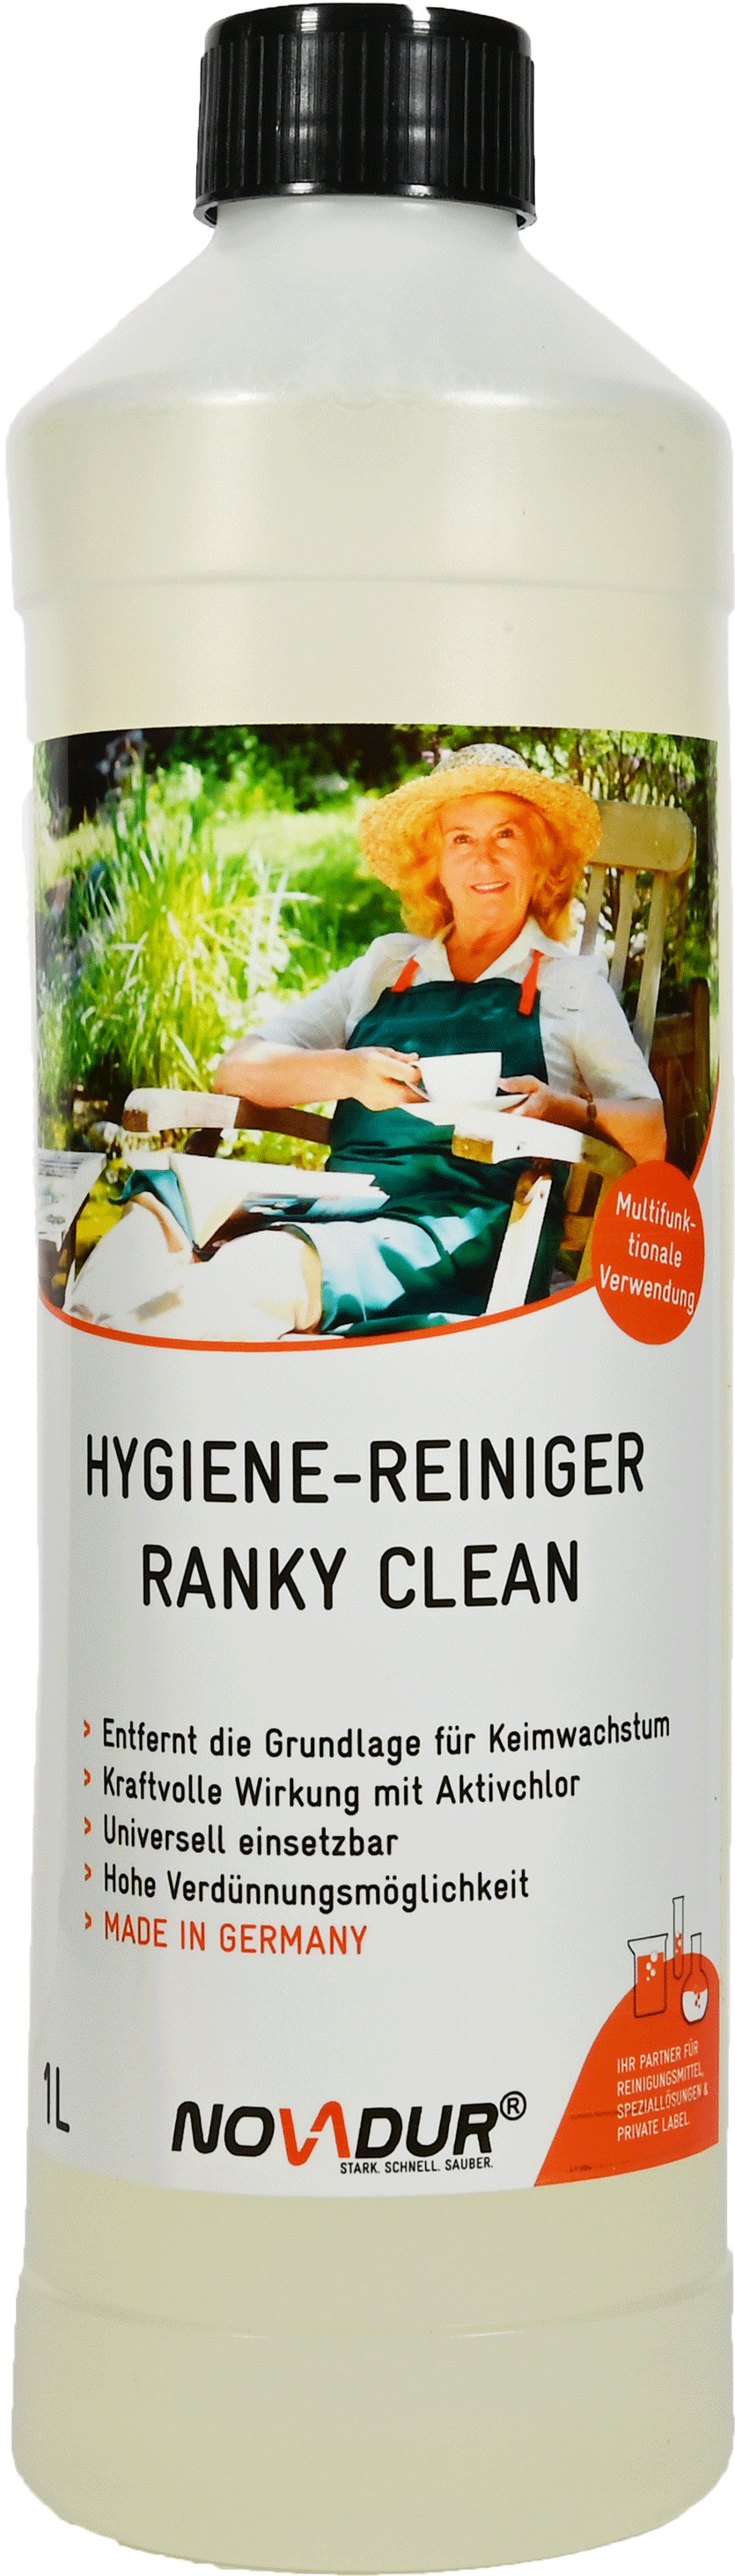 Hygienereiniger Ranky Clean